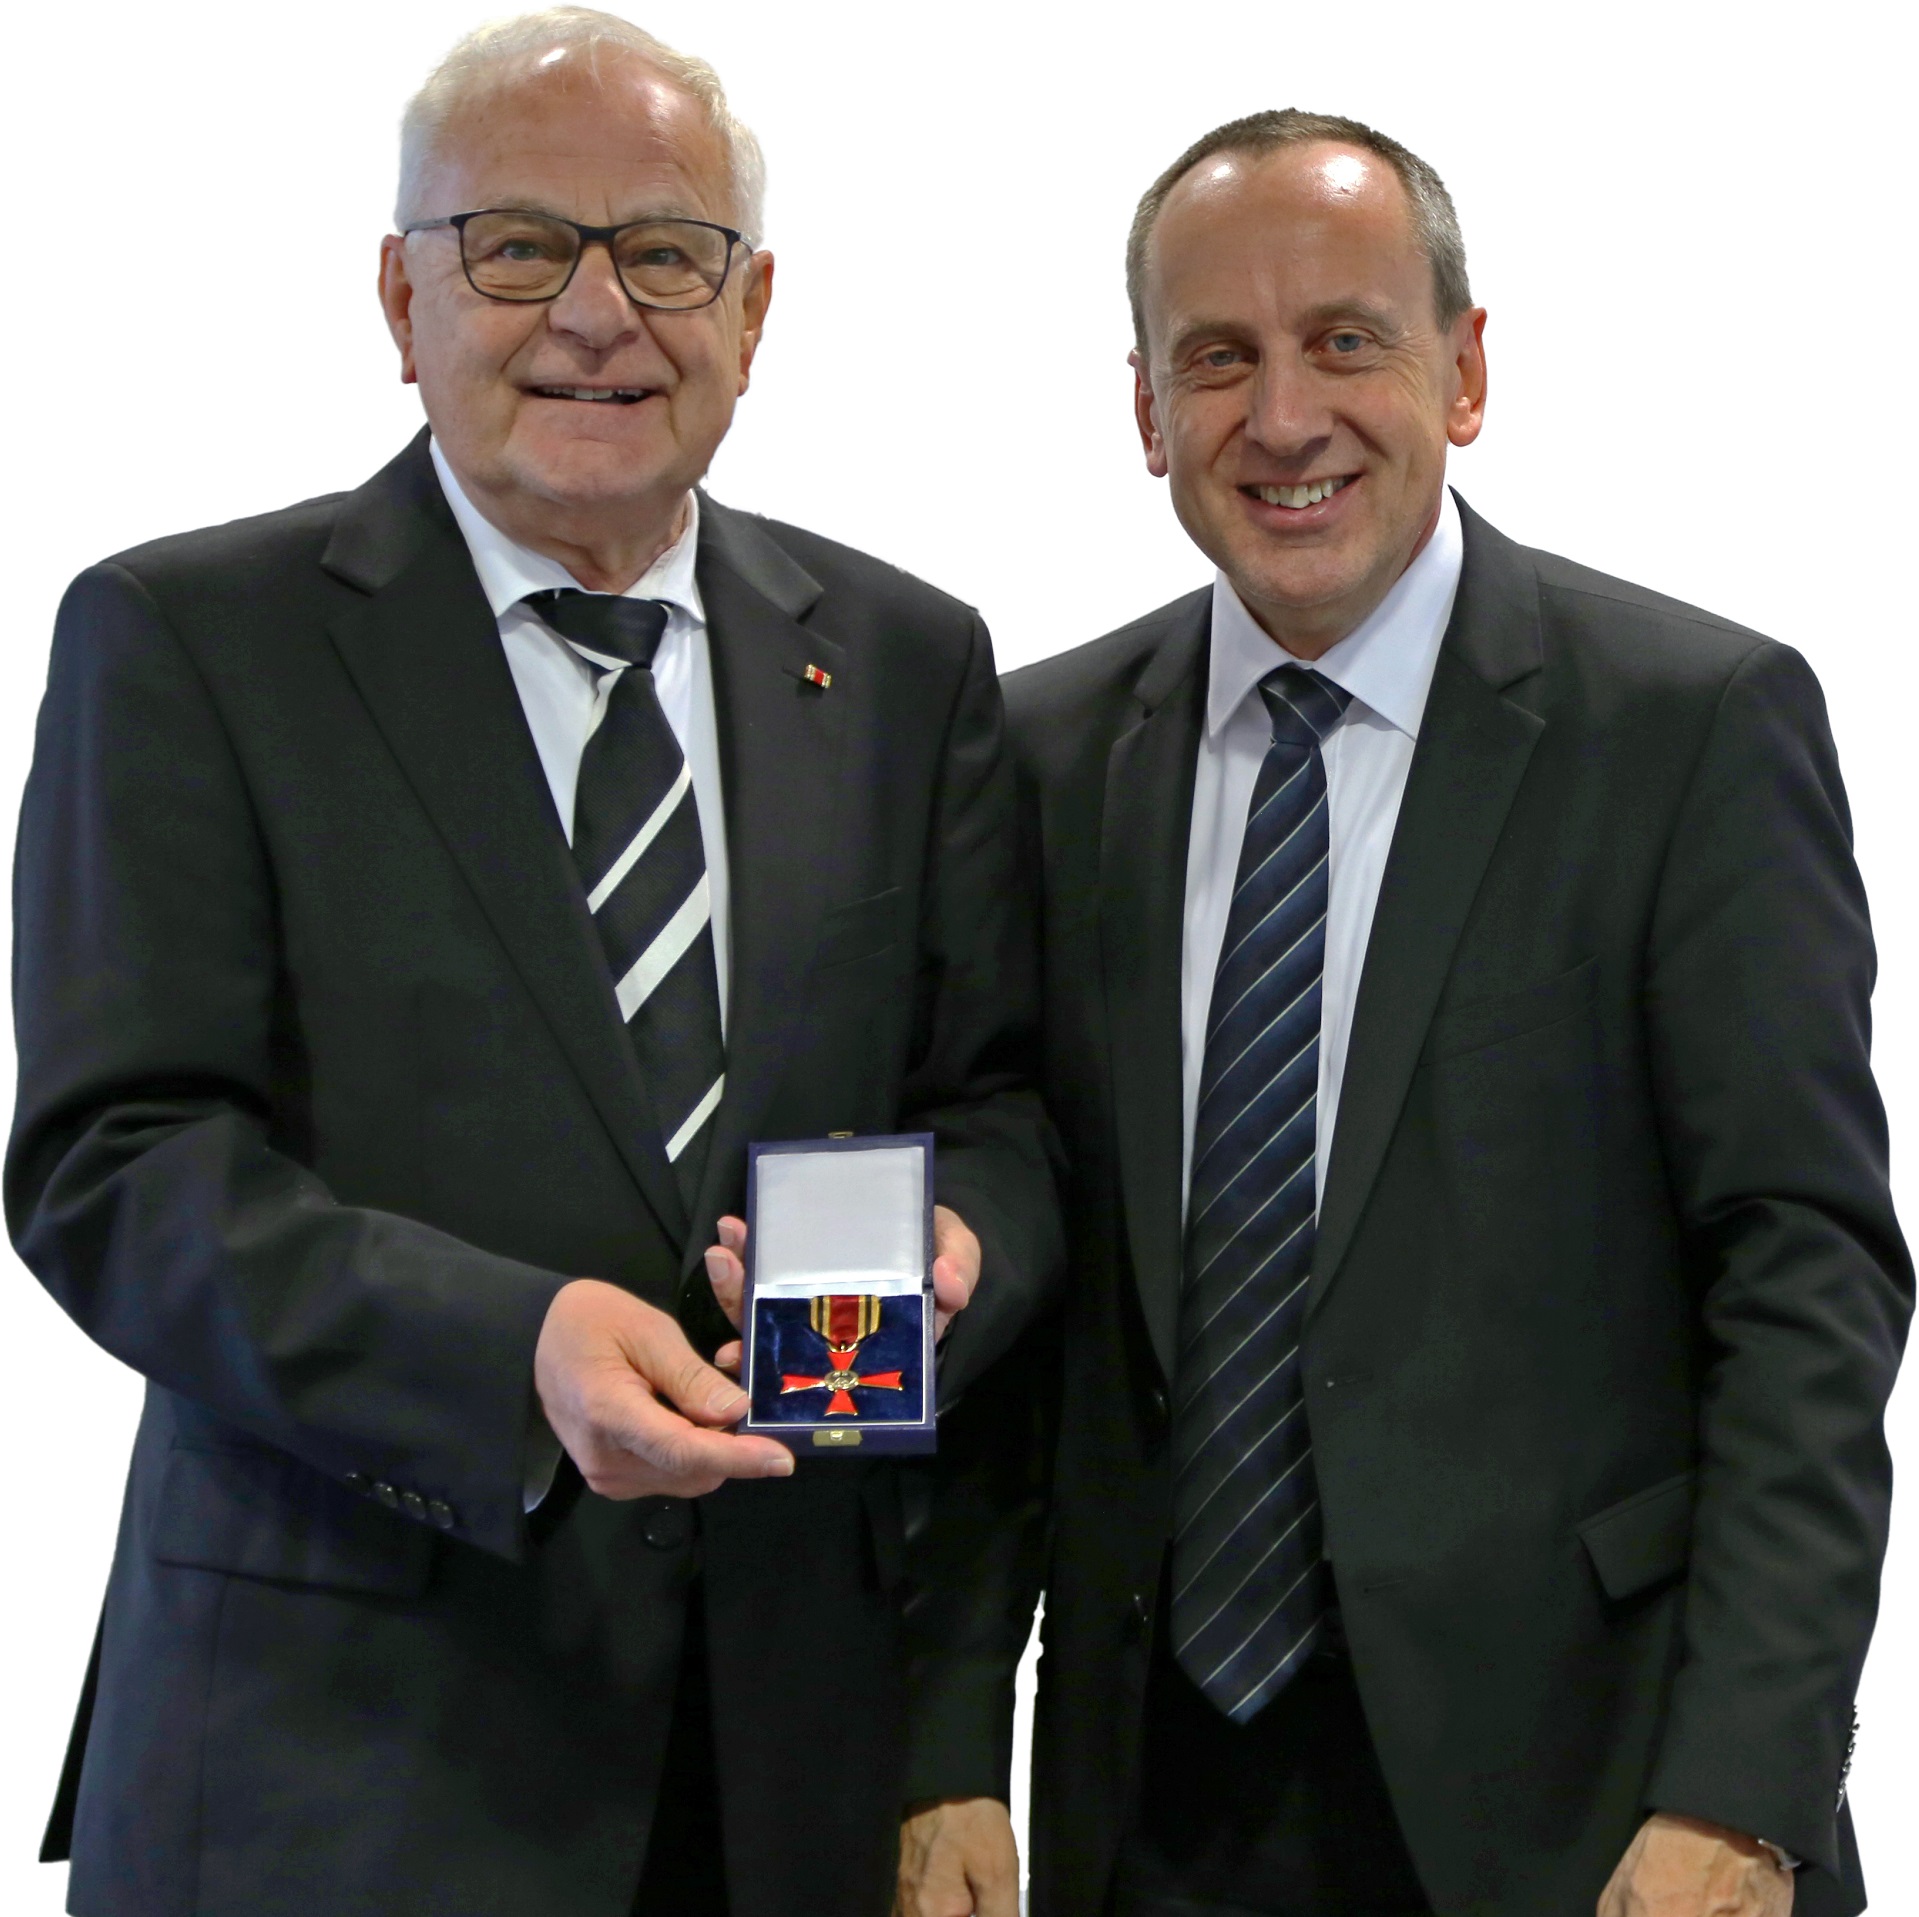 Kurt Lechner empfängt das Bundesverdienstkreuz von Konrad Wolf (rechts)